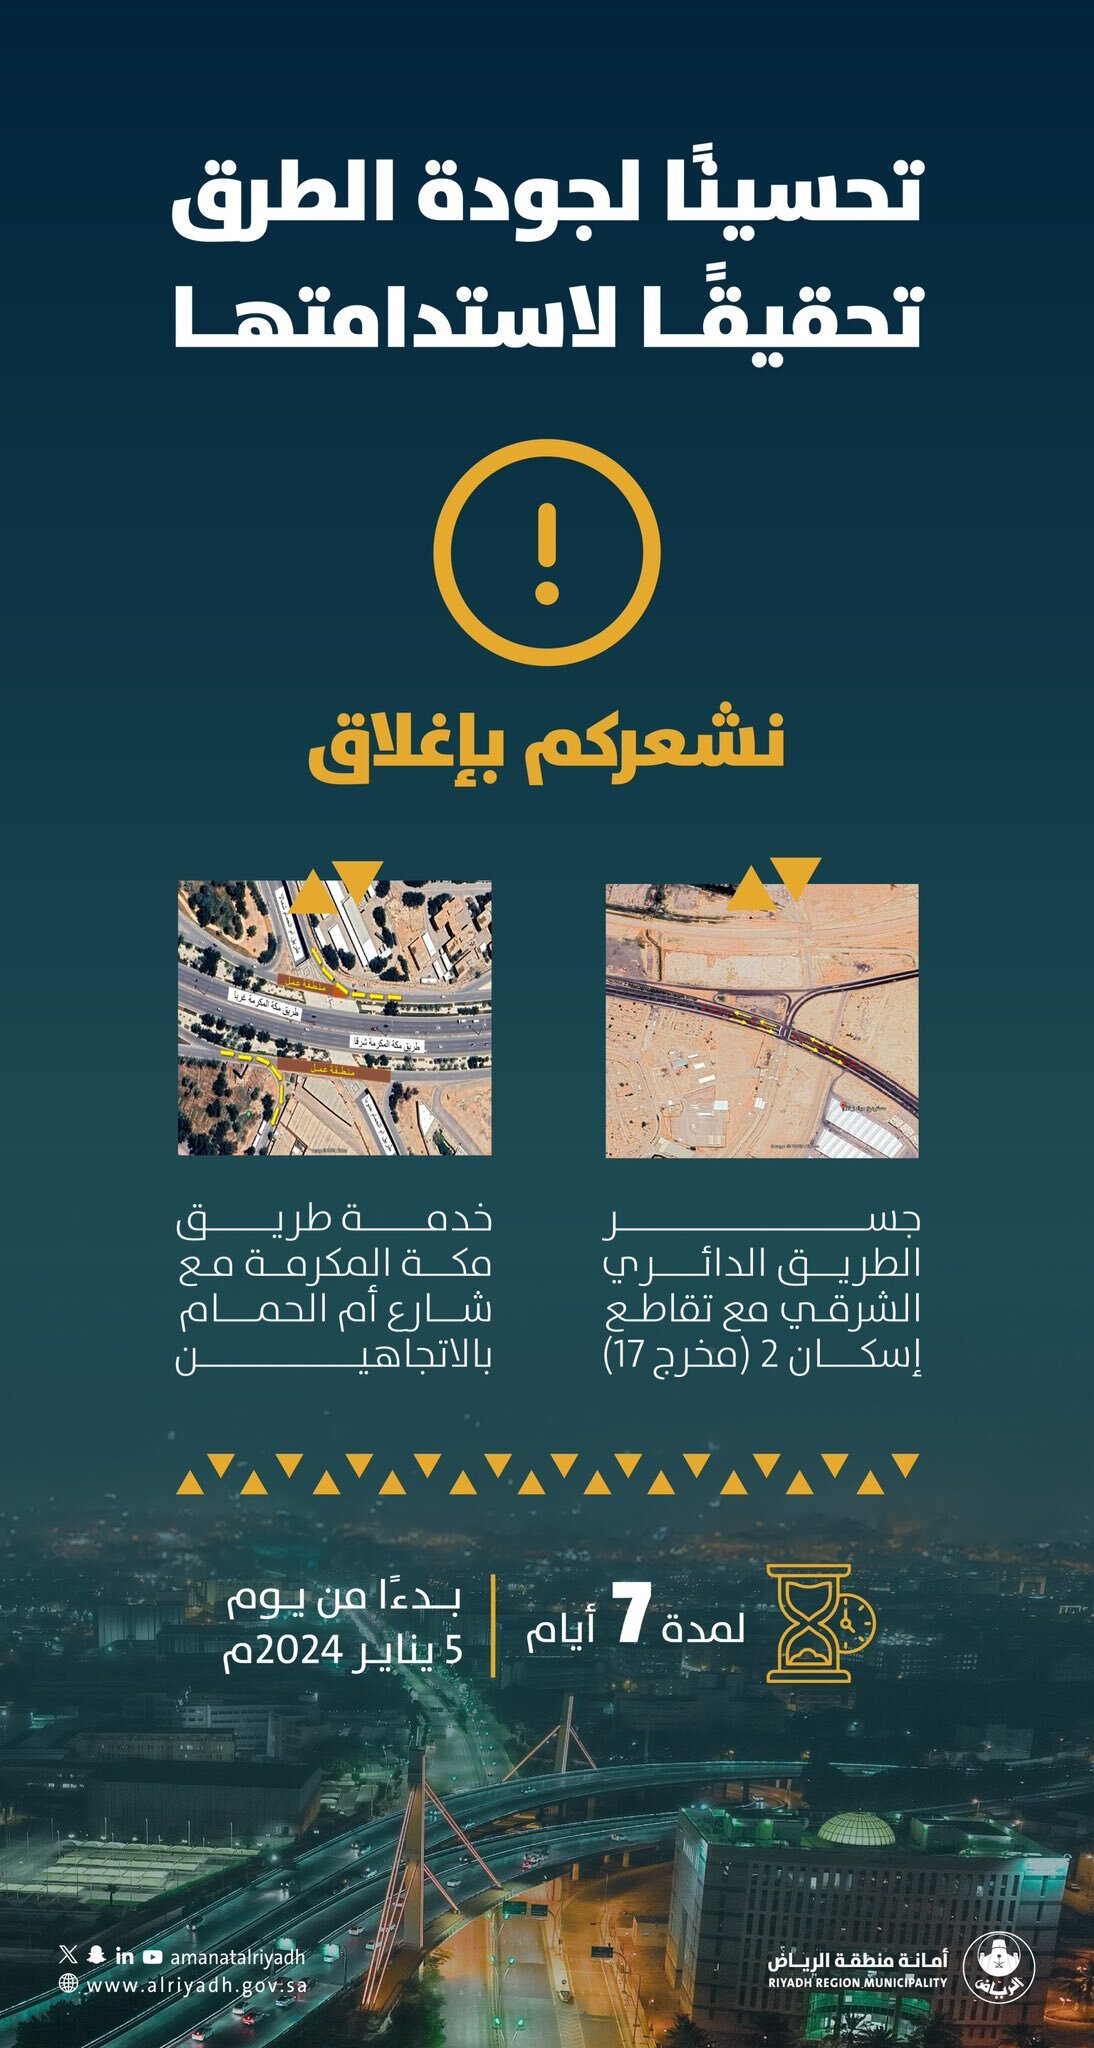 "أمانة الرياض": إغلاق جسر الطريق الدائري الشرقي وخدمة طريق مكة المكرمة 3